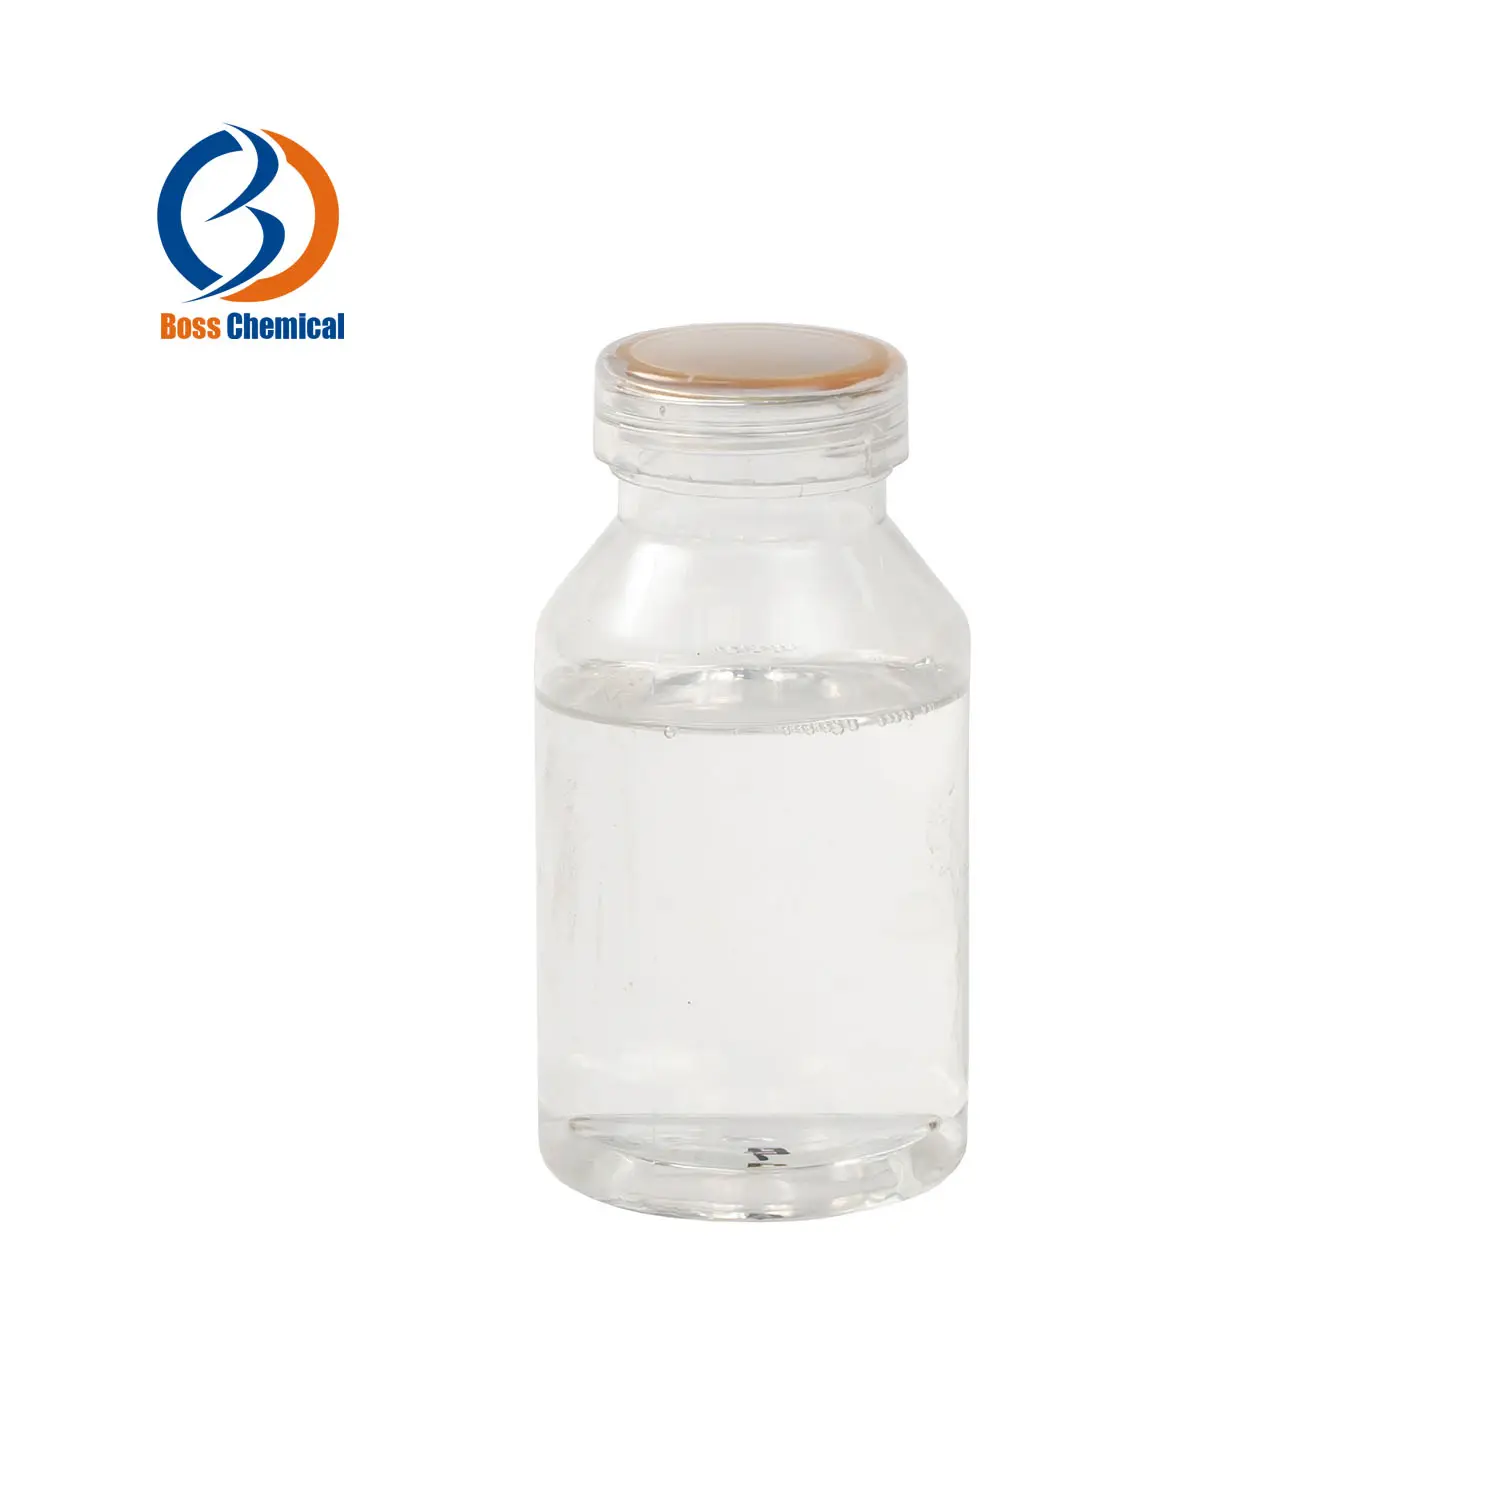 Su stock adeguato Ipm (isopropil miristato) isopropil miristato liquido con vendita diretta del produttore CAS 110-27-0isopropil m